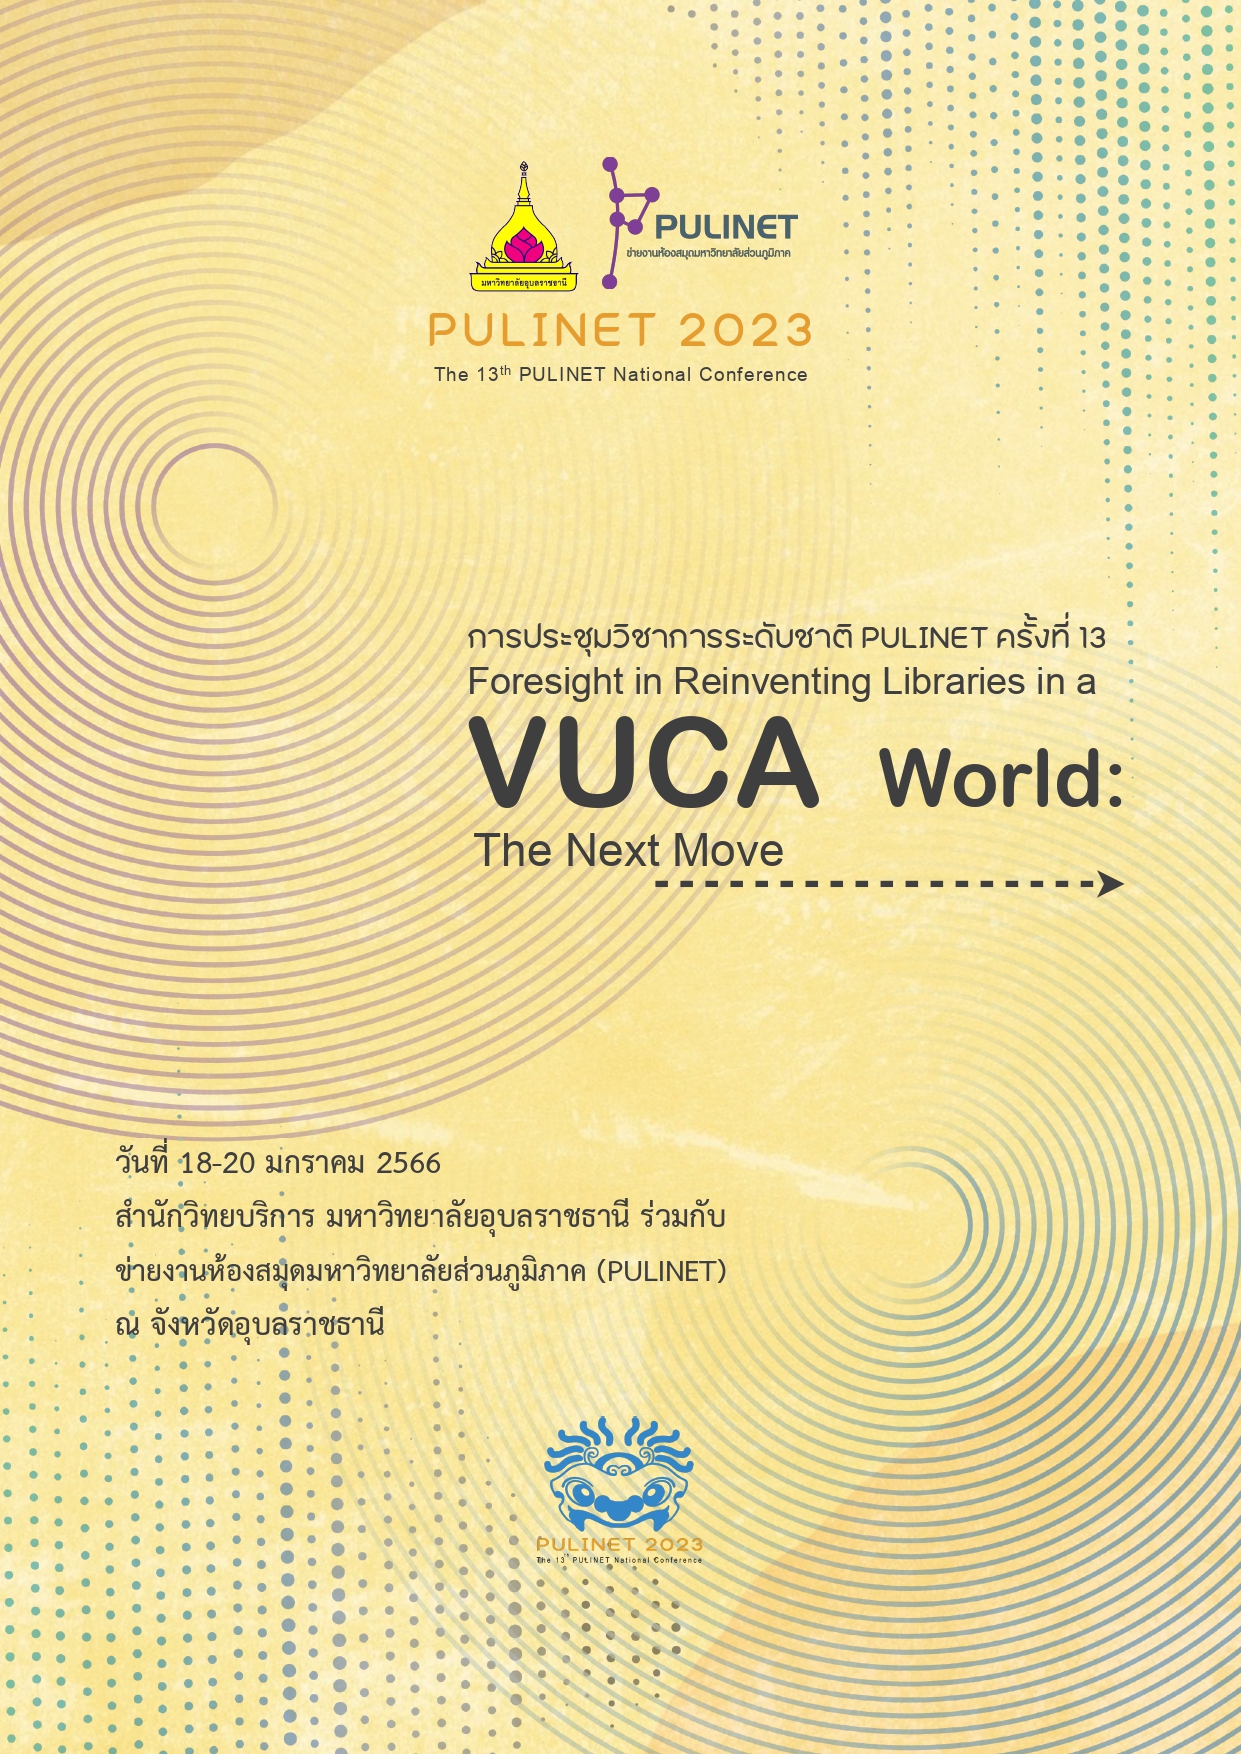 การประชุมวิชาการระดับชาติ PULINET ครั้งที่ 13 The 13th PULINET National Conference : foresight in reinventing libraries in a VUCA world : the next move